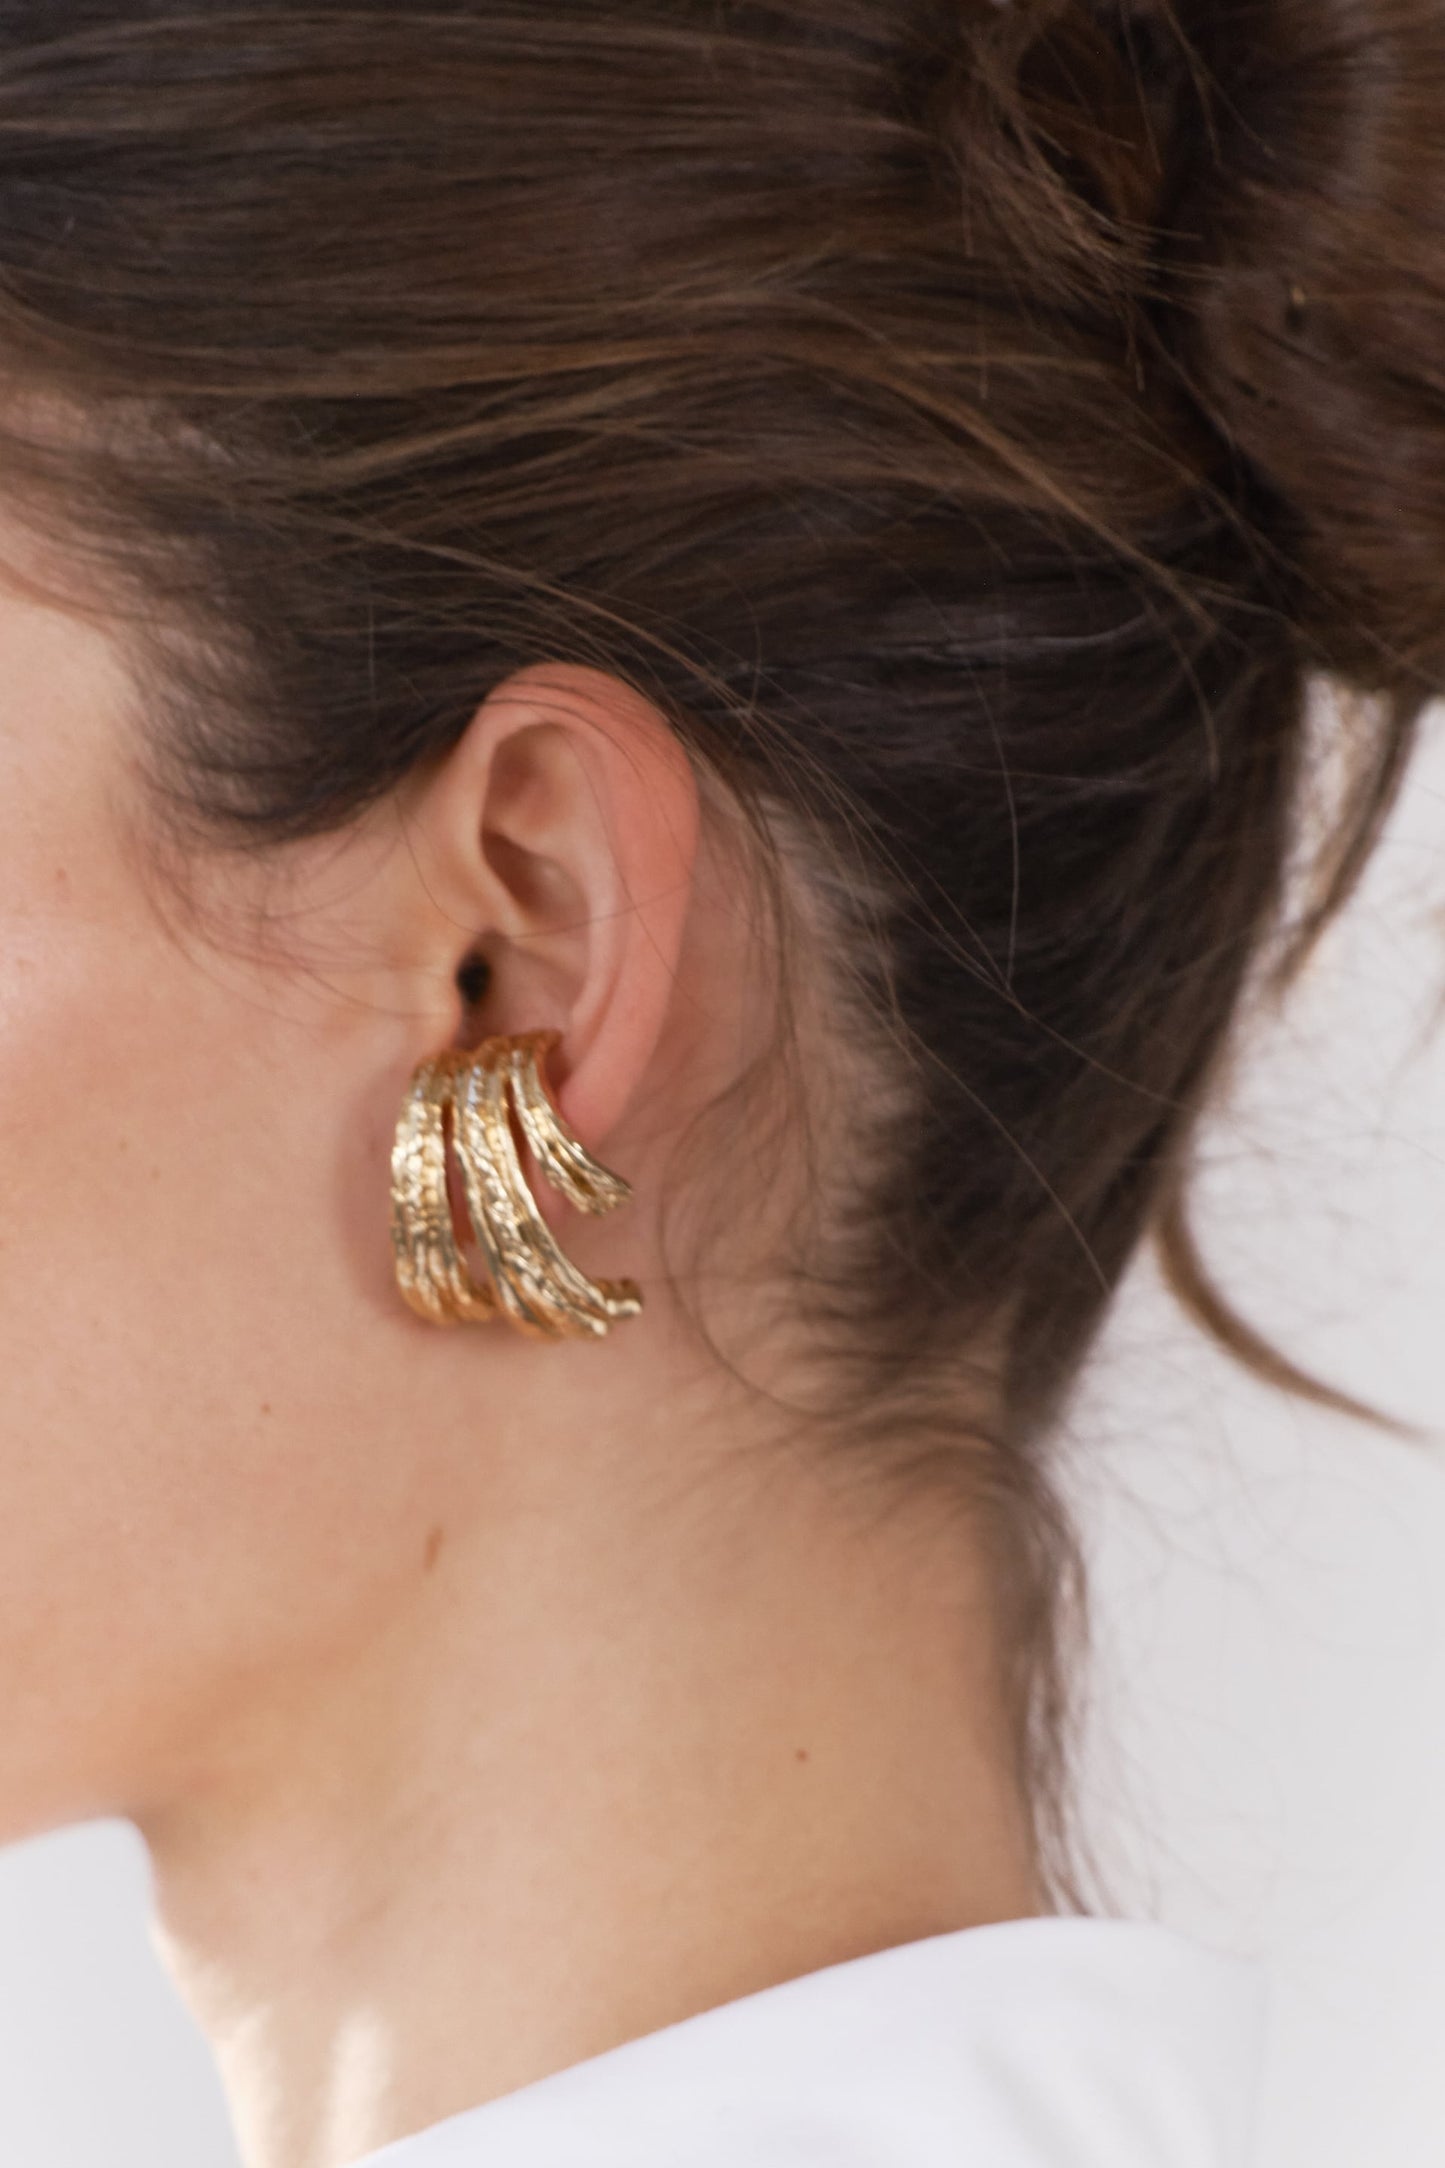 Triple metal earrings